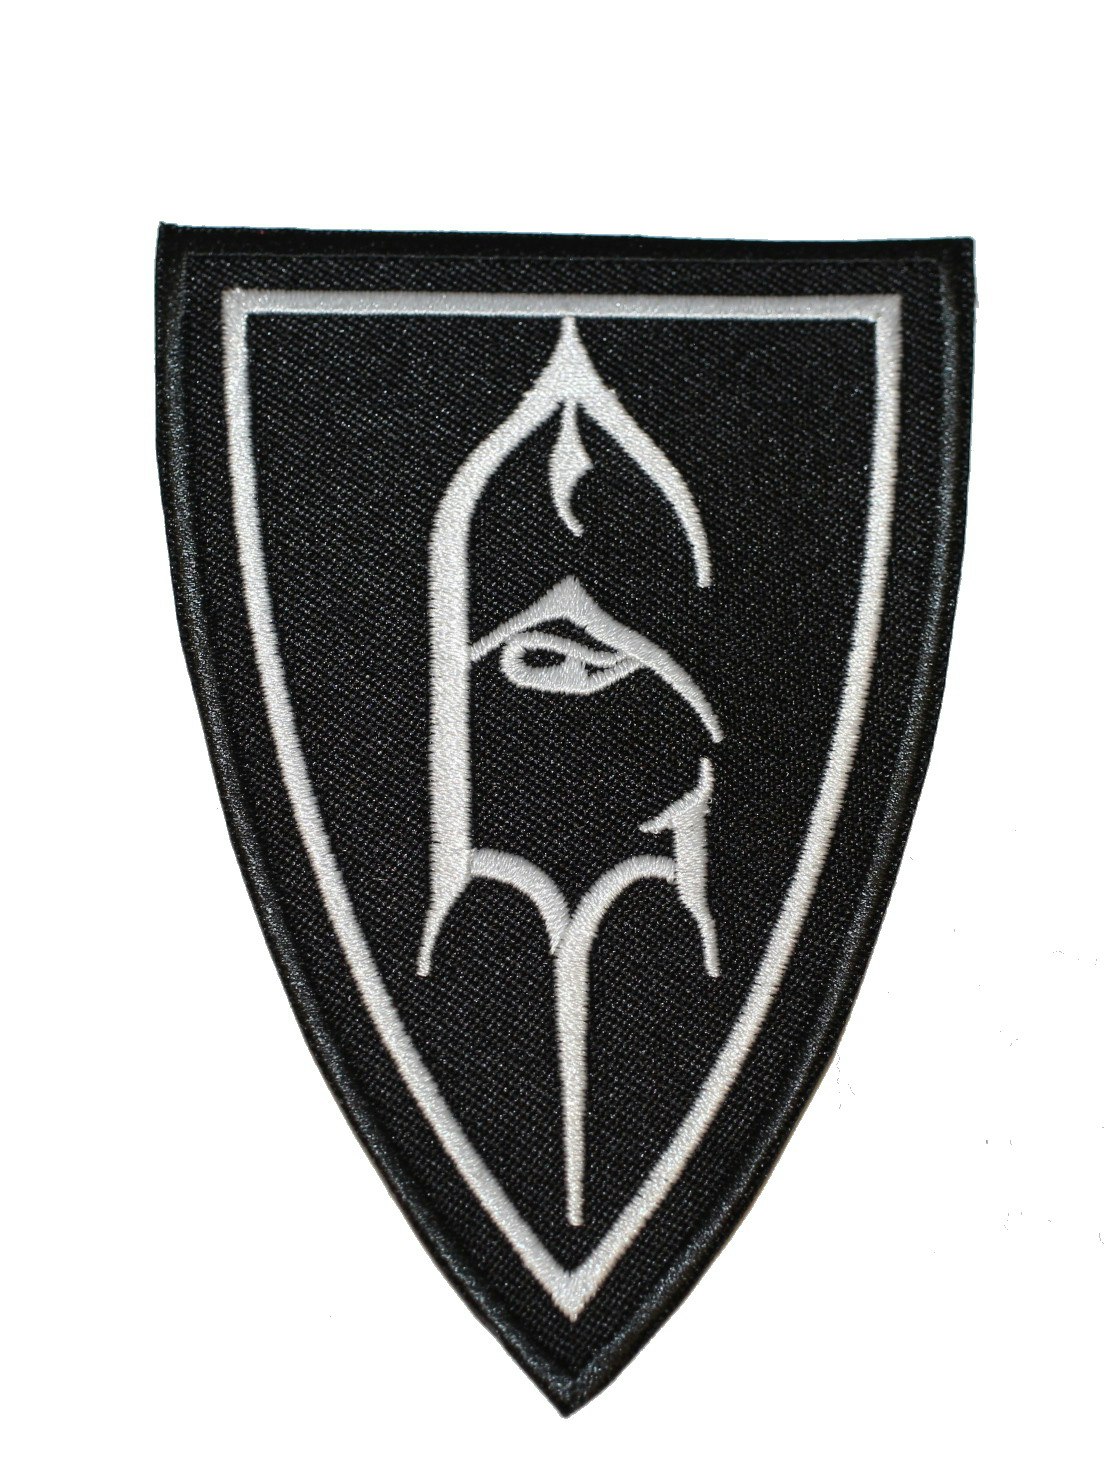 Emperor logo patch